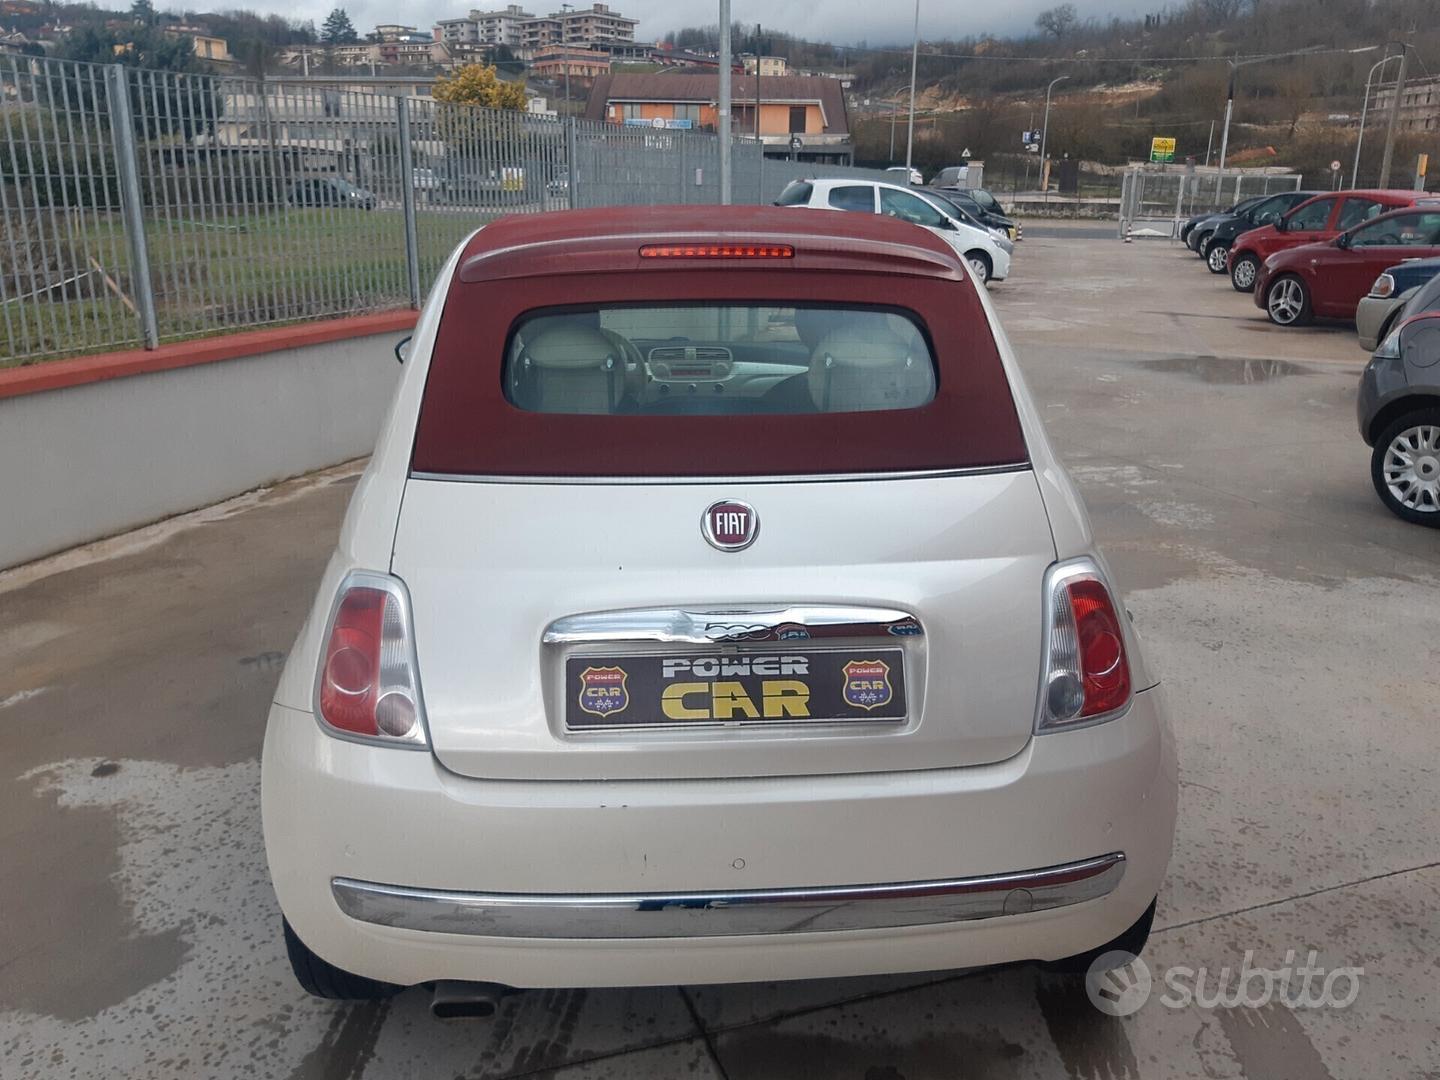 Subito - POWER CAR - Fiat 500 - Auto In vendita a Frosinone